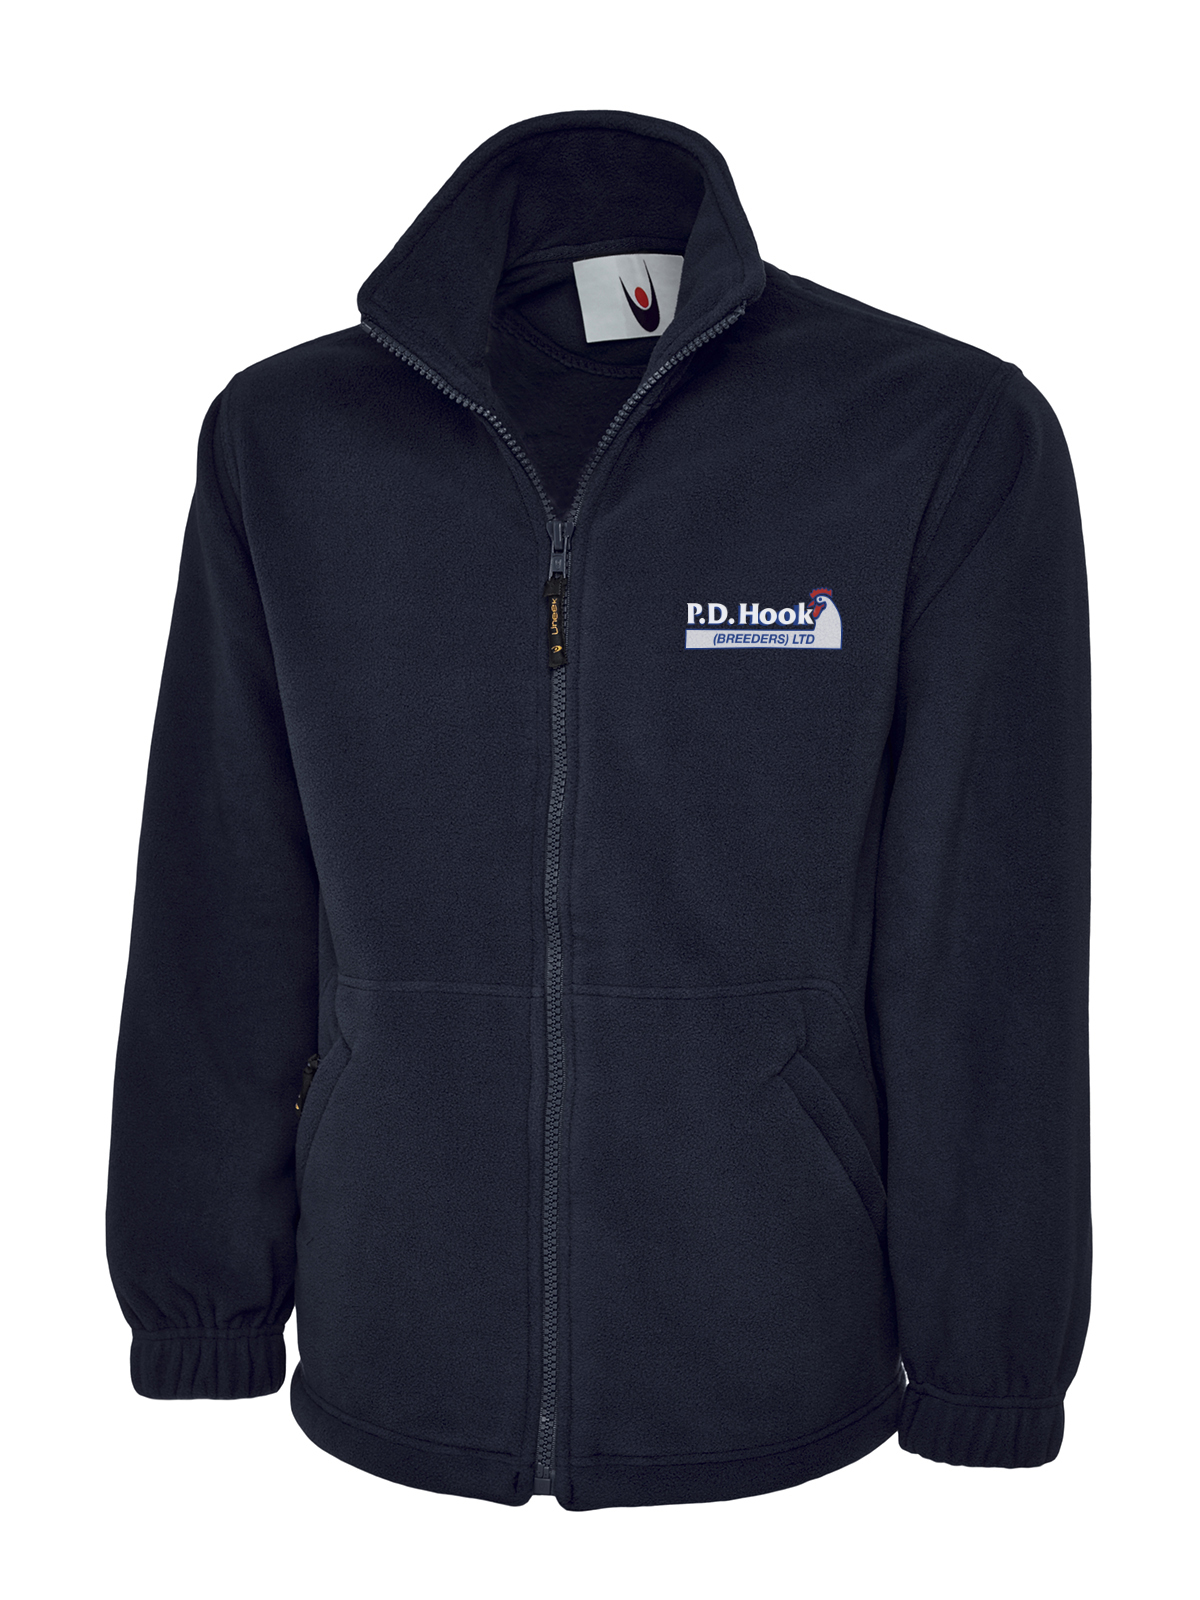 P D Hook (Breeders) Ltd - Full Zip Fleece Jacket, Navy - Size Medium